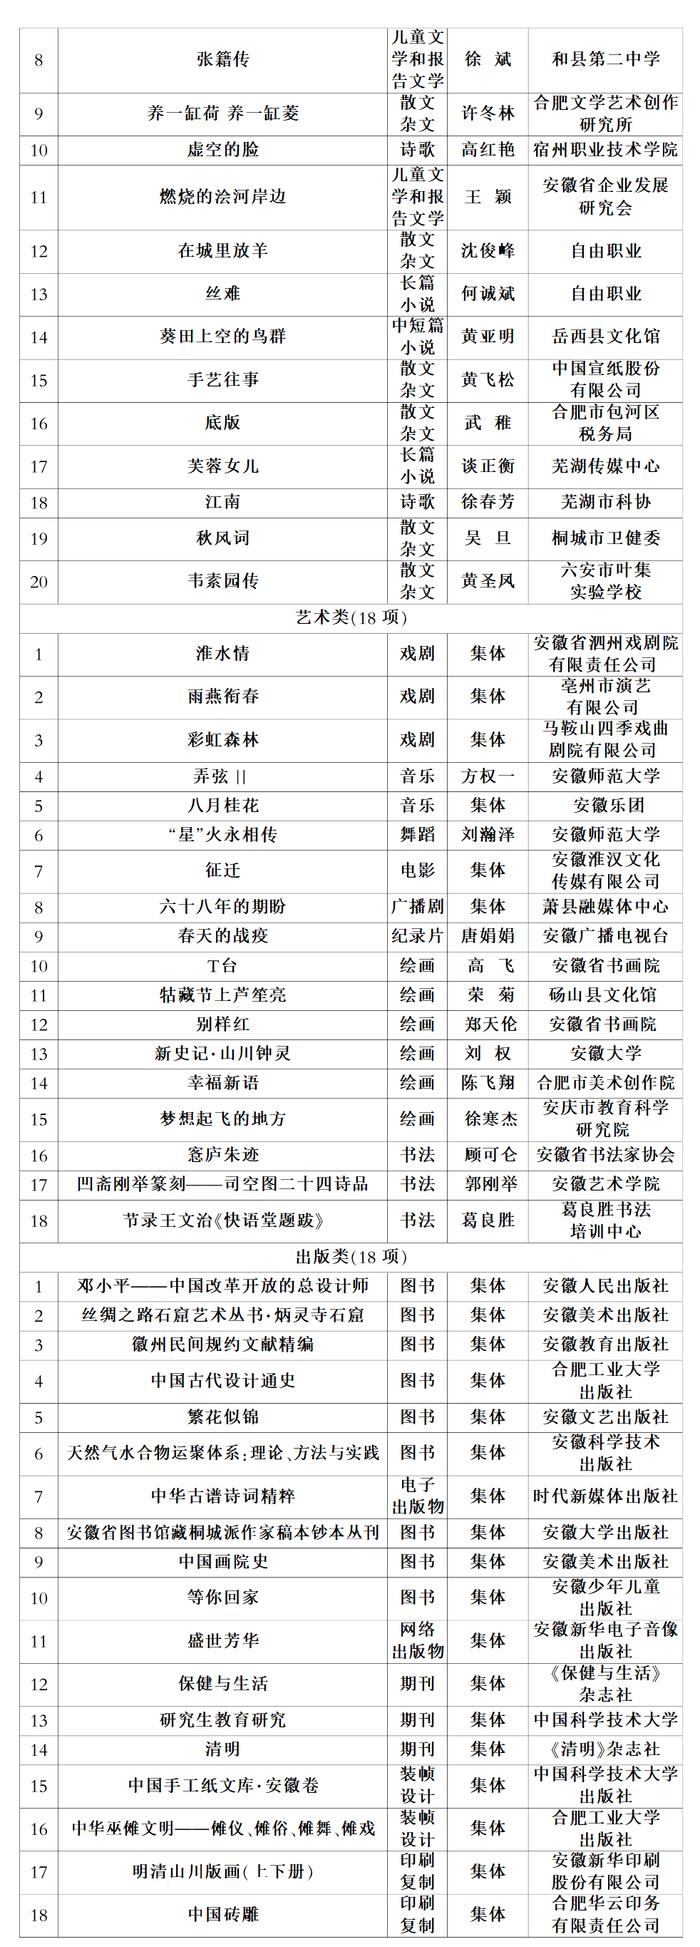 2019—2020年度安徽省社会科学奖拟获奖成果名单公示